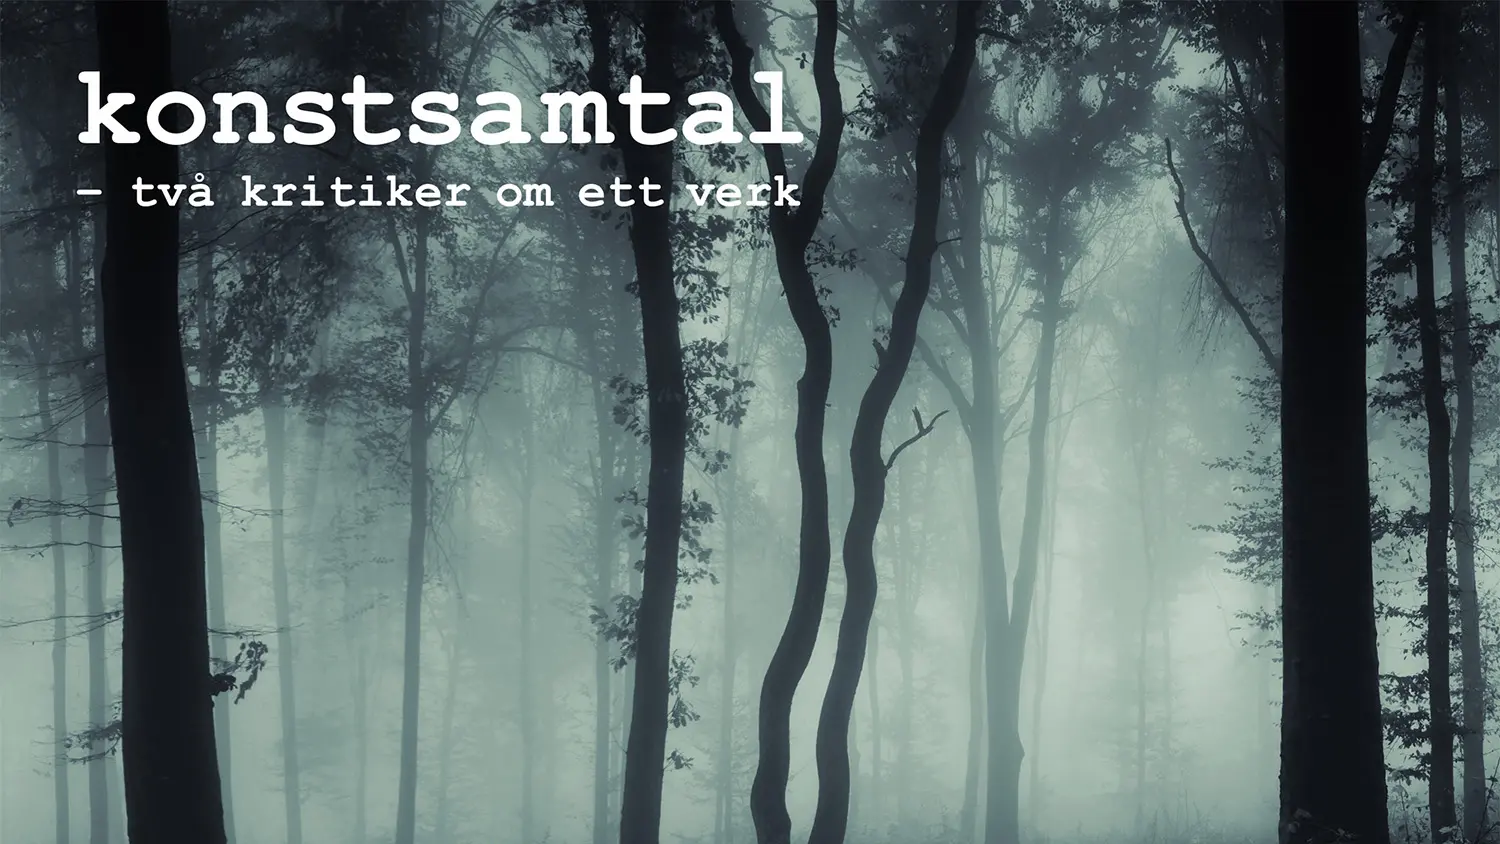 En dimmig skog och texten "Konstsamtal - två kritiker om ett verk".